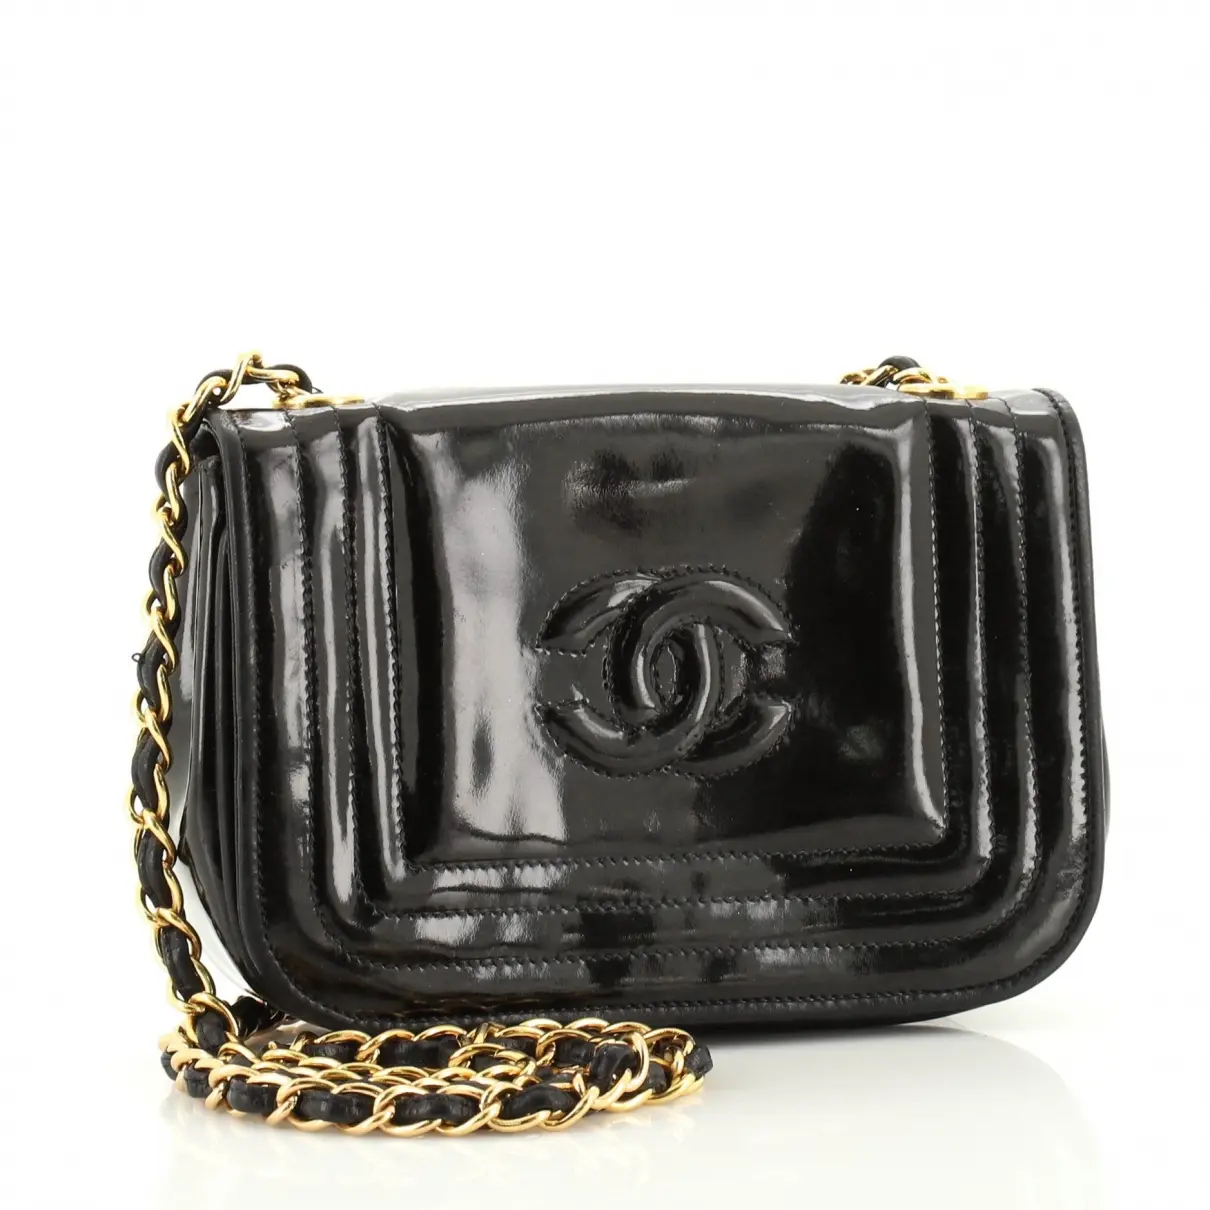 Chanel Leather handbag for sale - Vintage